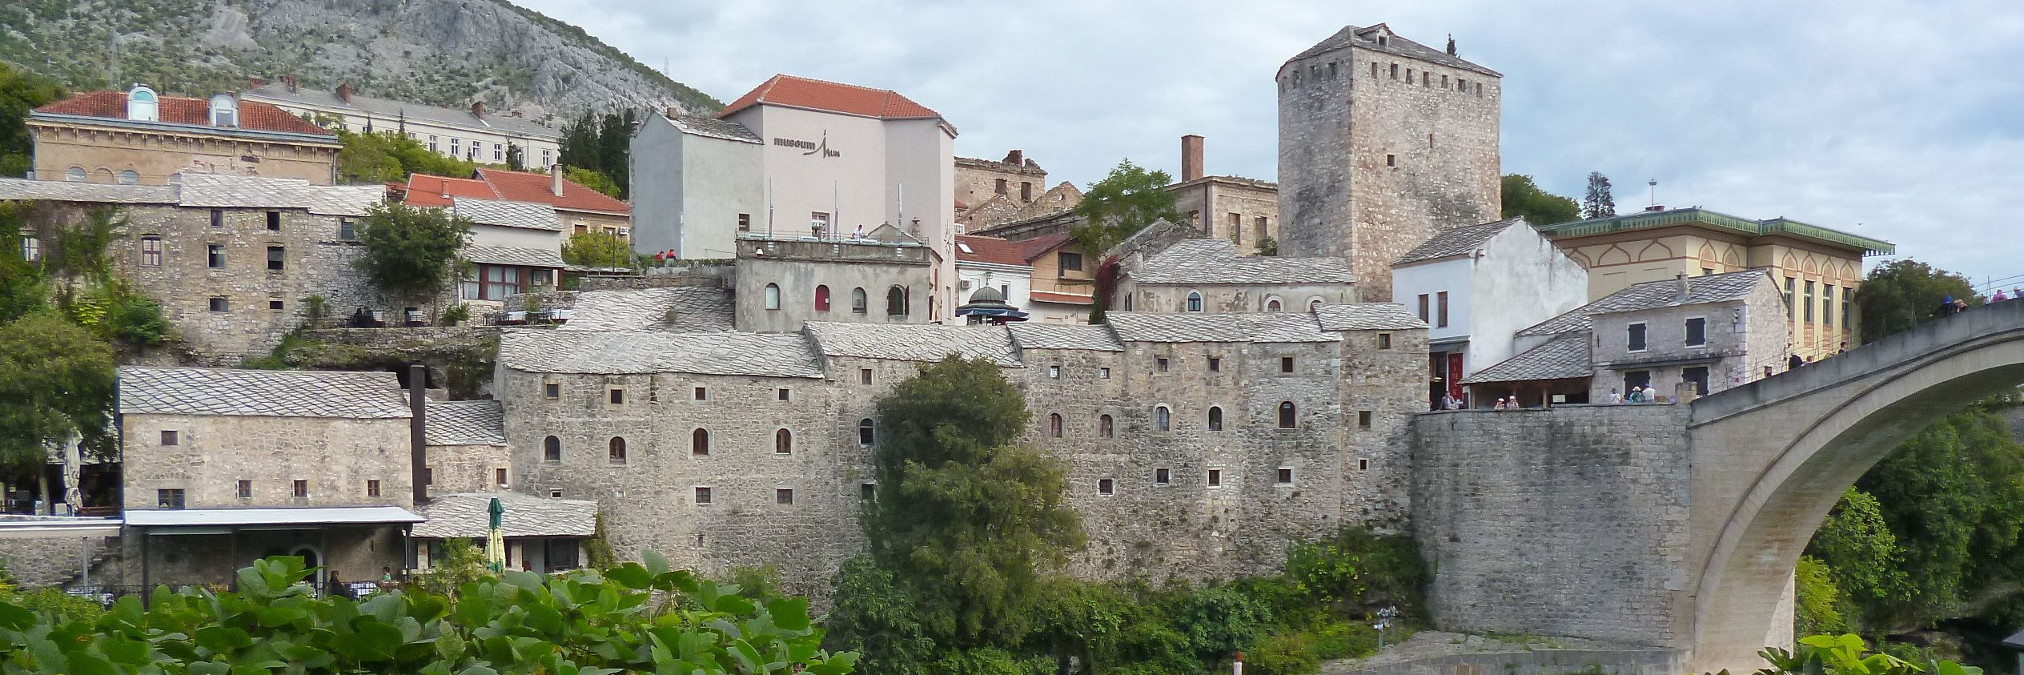 7 причин для путешествия по Боснии и Герцеговине